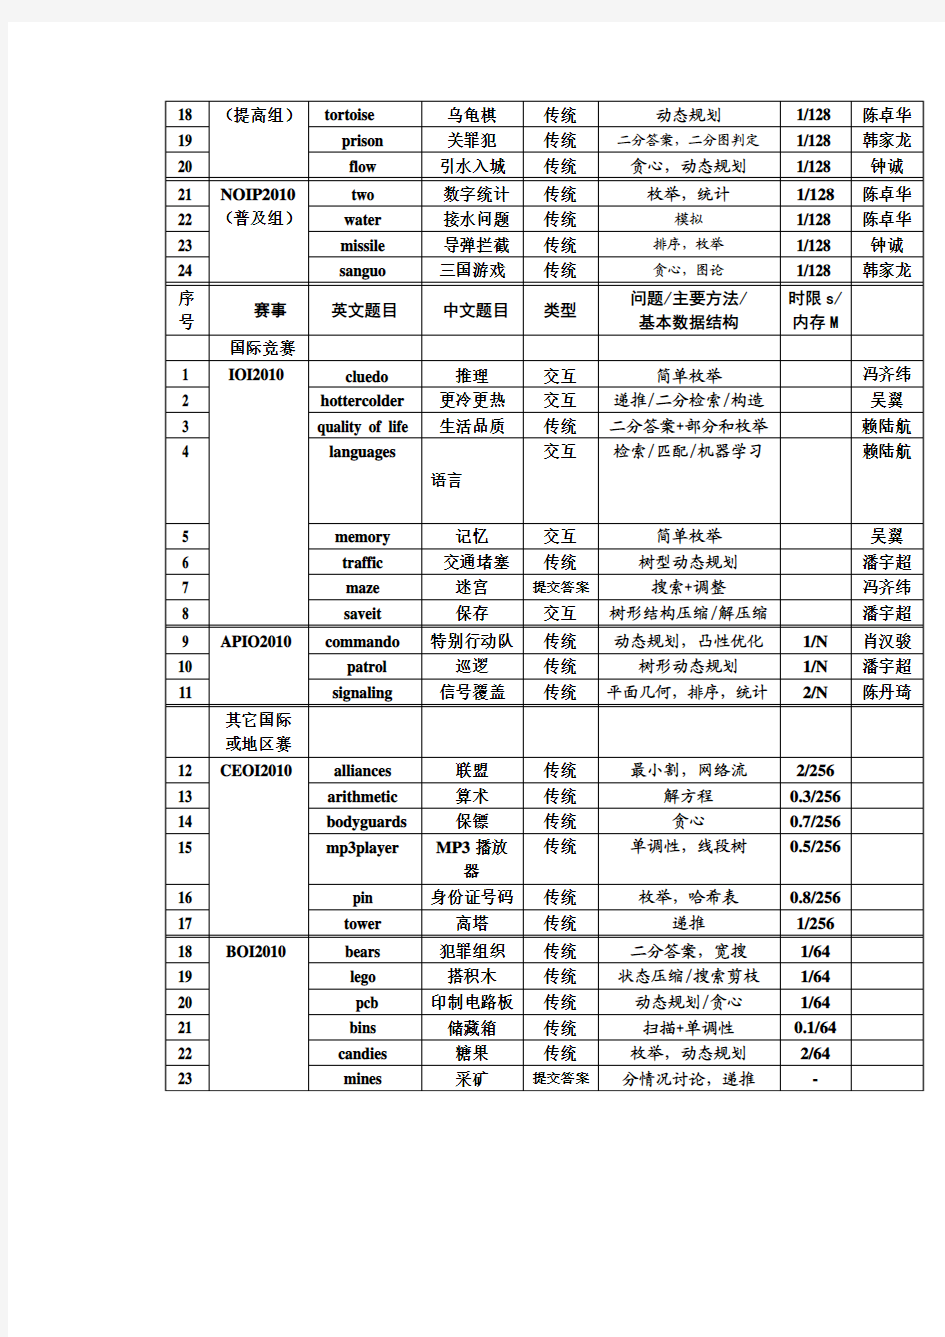 2010试题回顾与竞赛特点分析—王宏0116-2